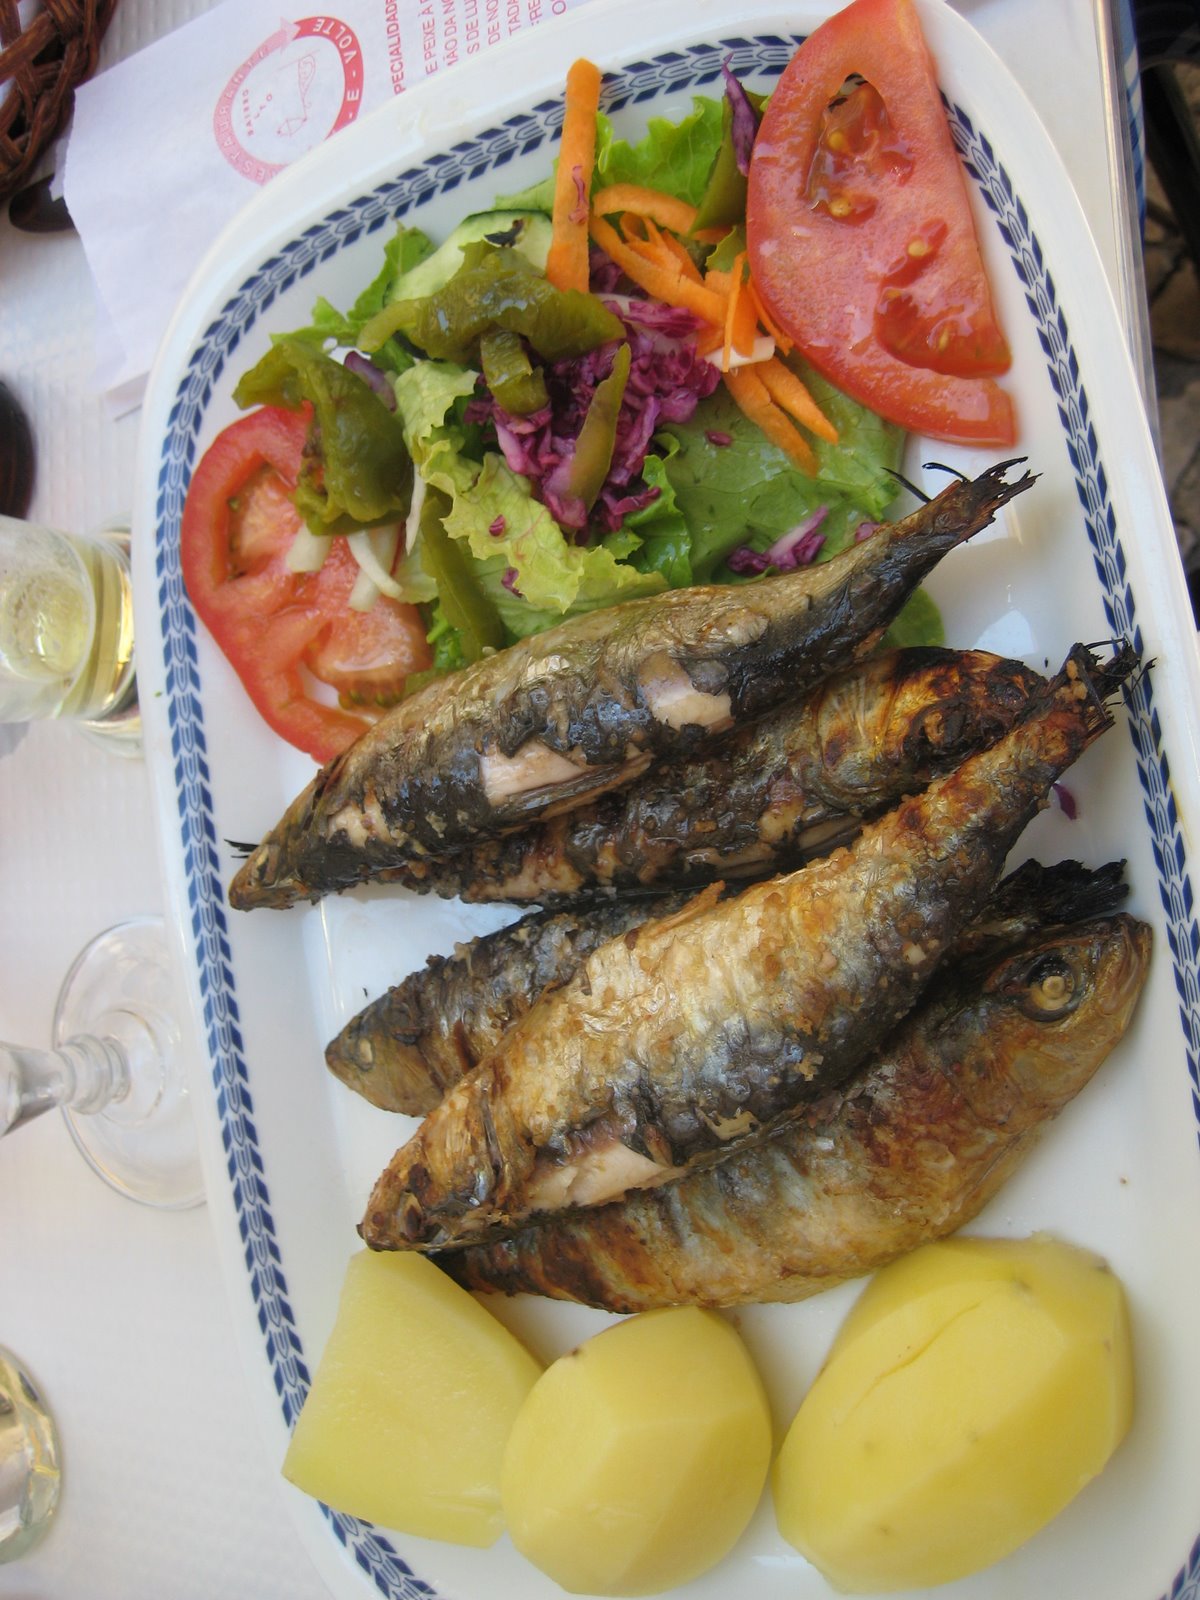 Eating sardines in Lisbon — mmmmm!